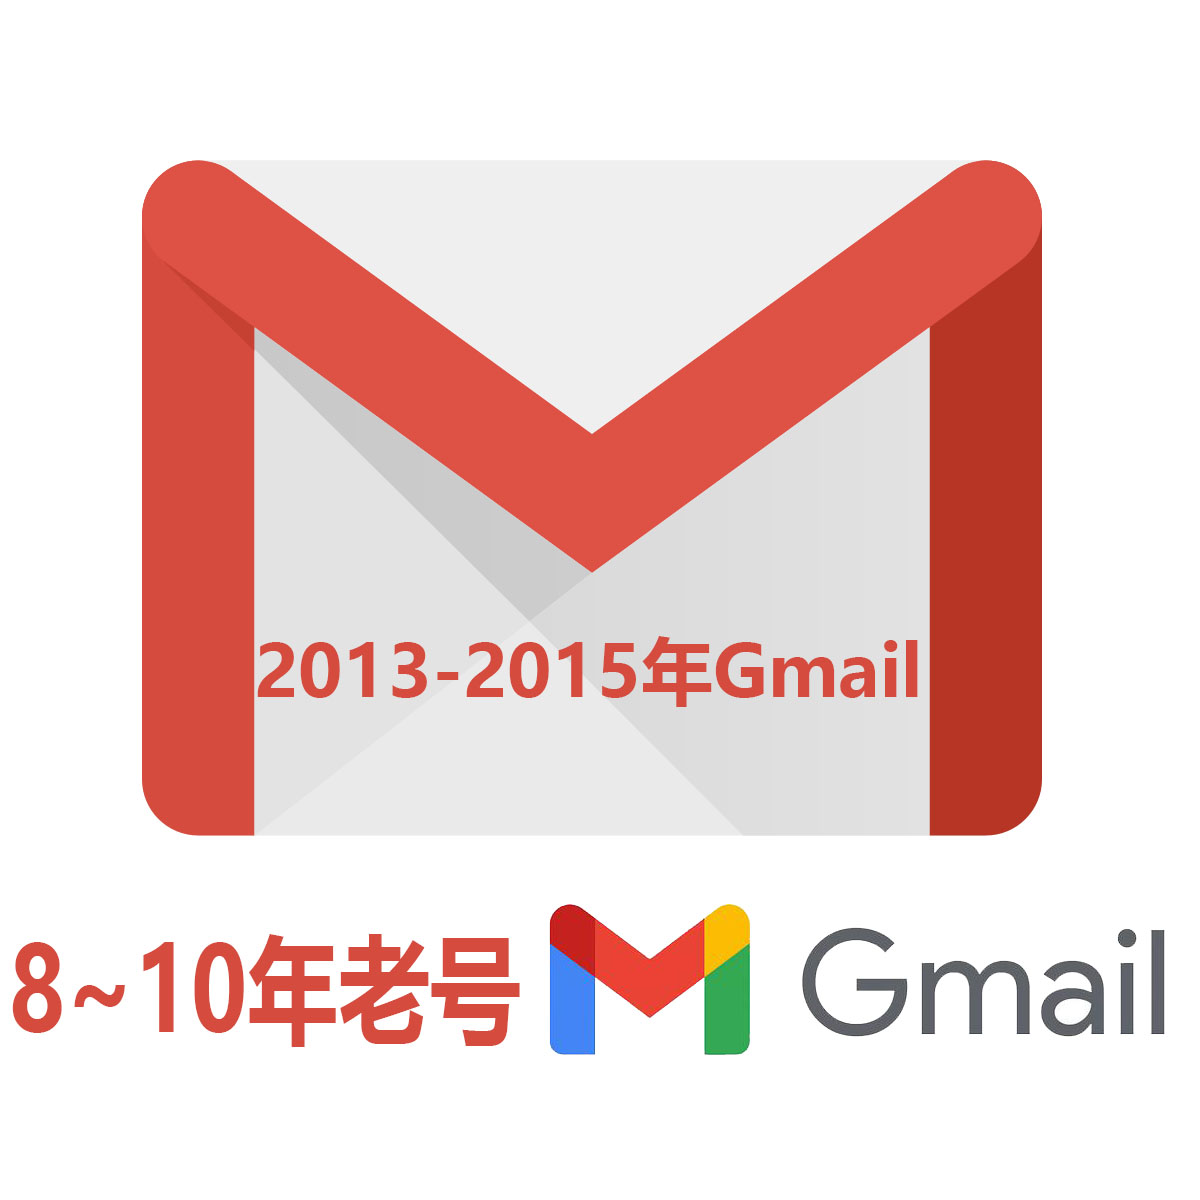 8-10年老Gmail|随机地区|耐操耐用